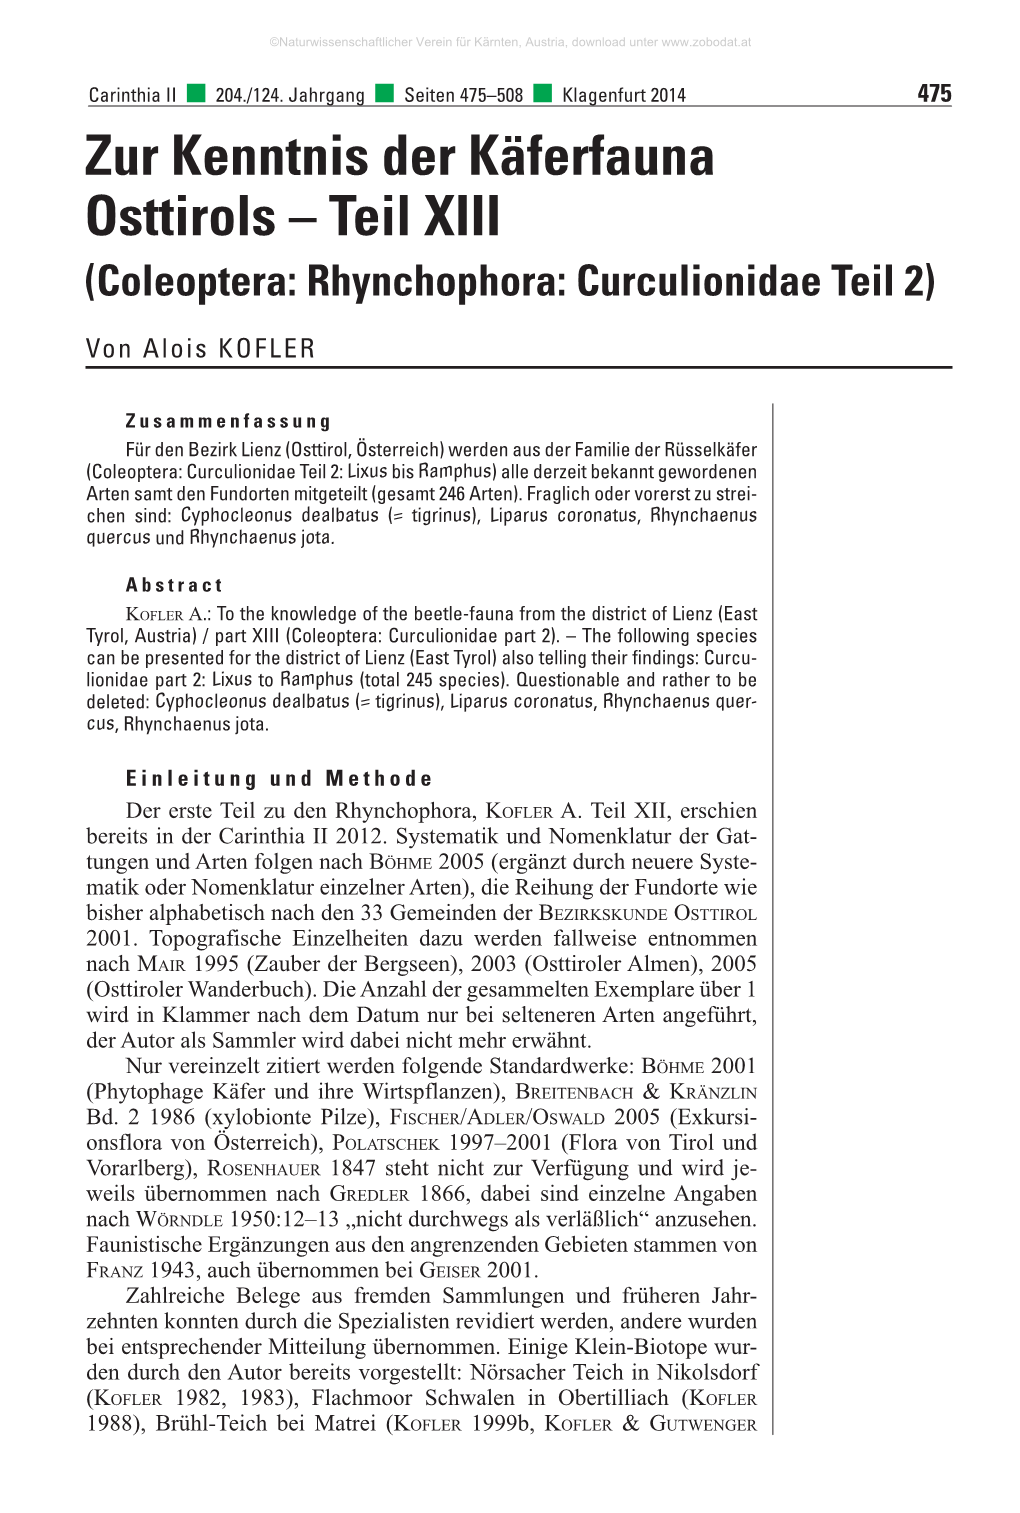 Zur Kenntnis Der Käferfauna Osttirols – Teil XIII (Coleoptera: Rhynchophora: Curculionidae Teil 2)